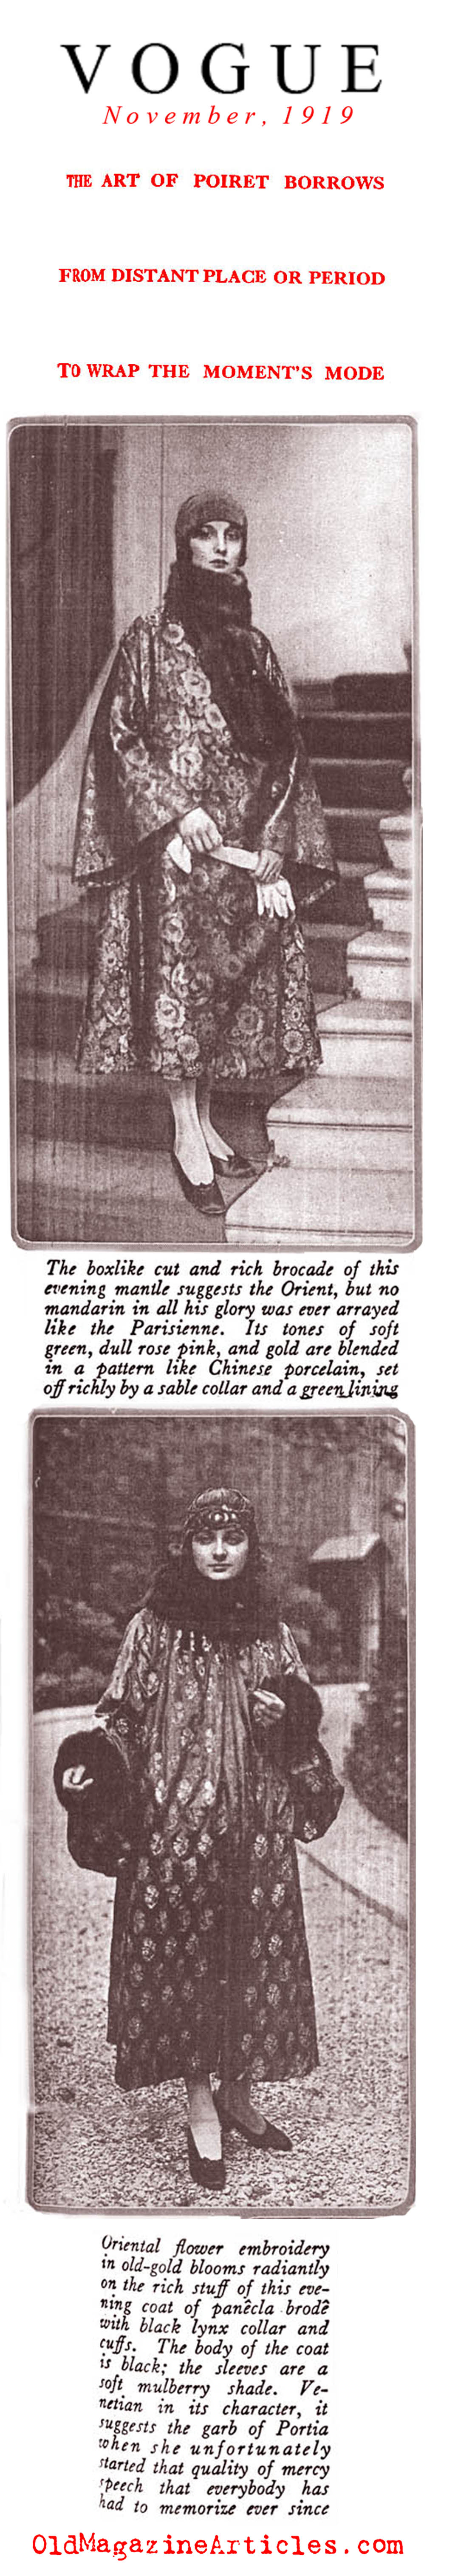 Poiret Wraps and Coats (Vogue Magazine, 1919)